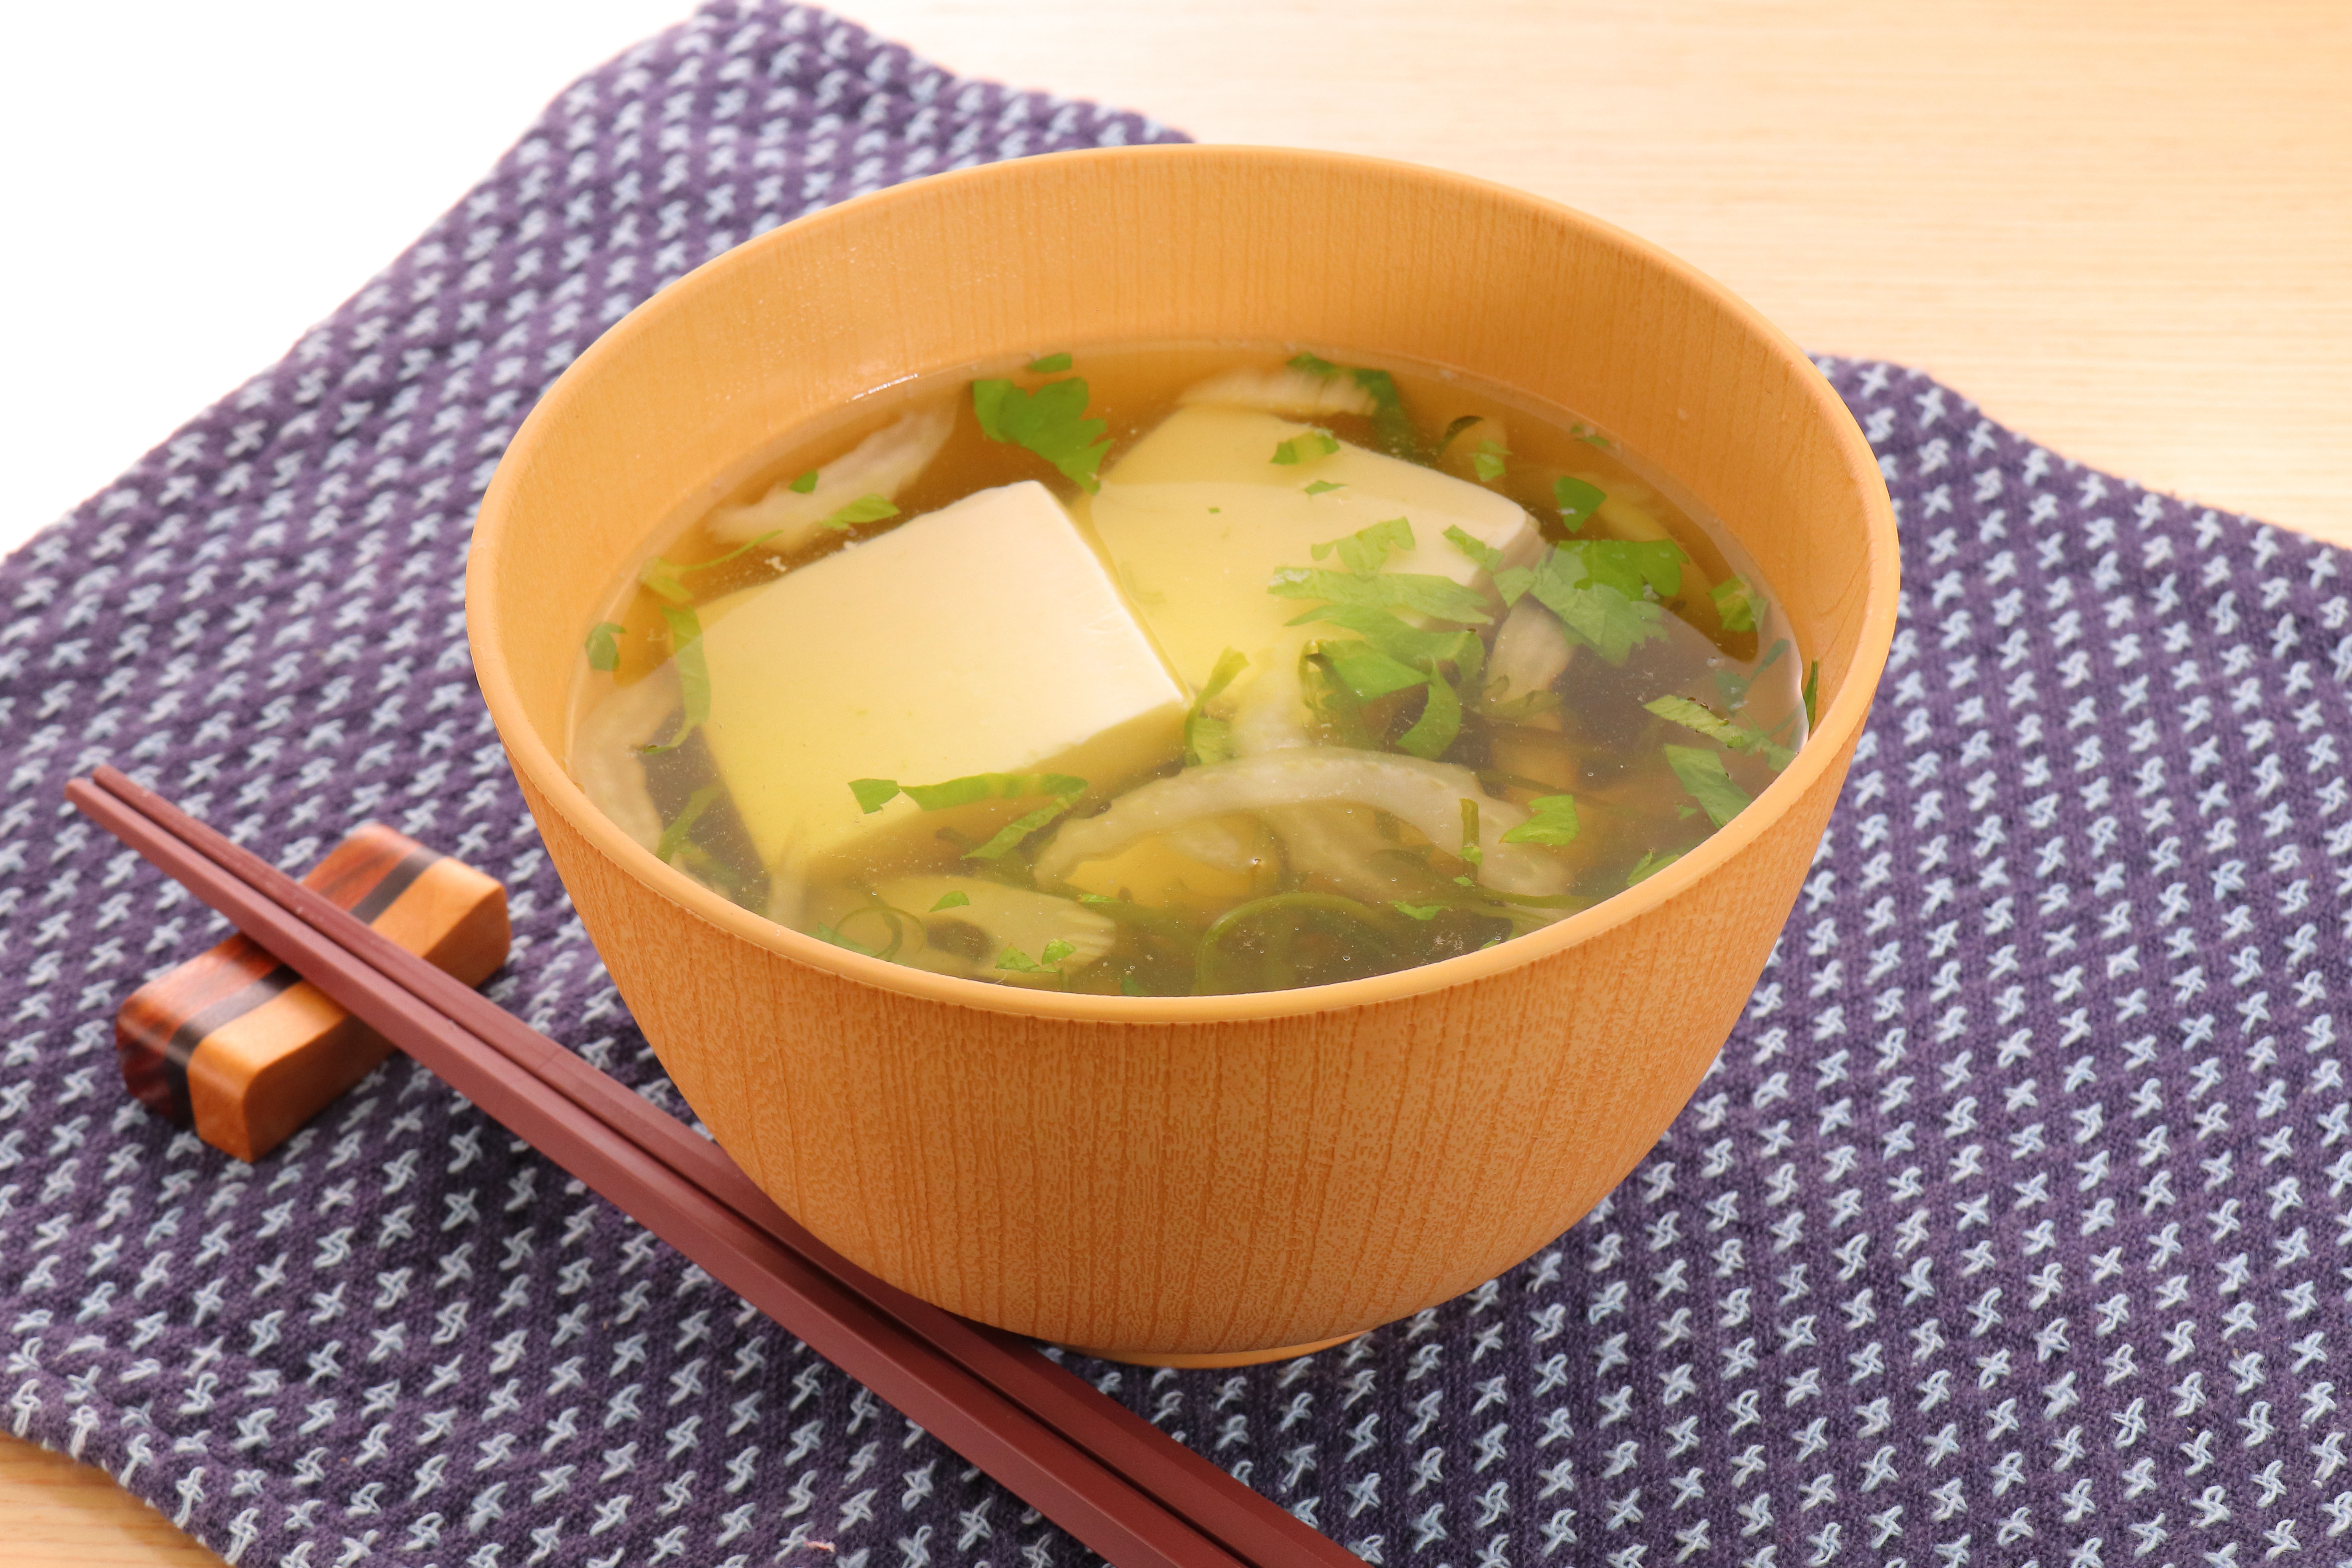 めかぶとセロリのとろみ豆腐のイメージ画像